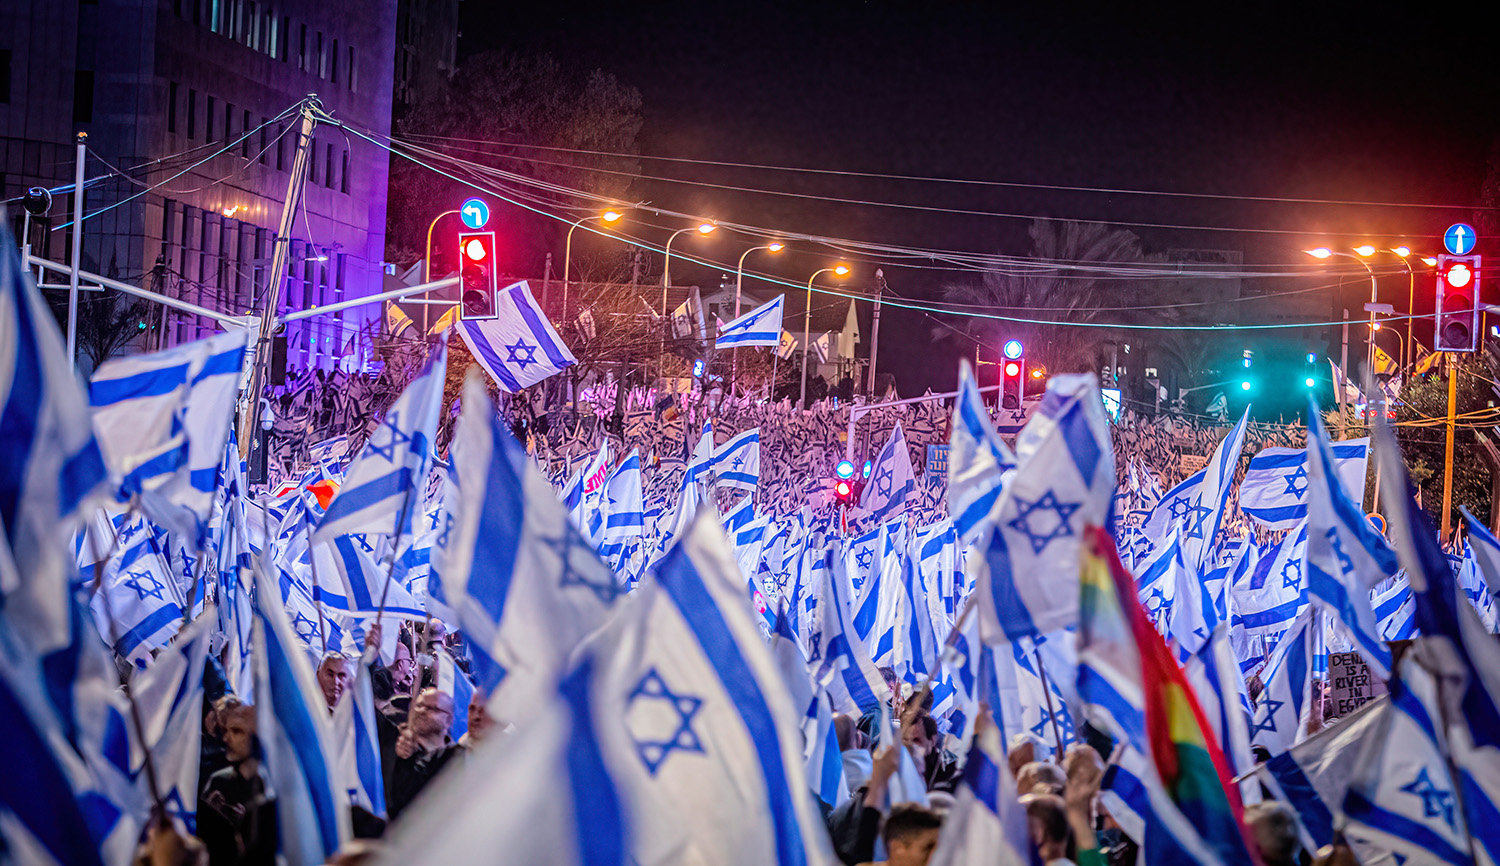 
An anti-judicial reform demonstration in Israel in April 2023. Eyal Warshavsky/SOPA Images/LightRocket via Getty Images.






